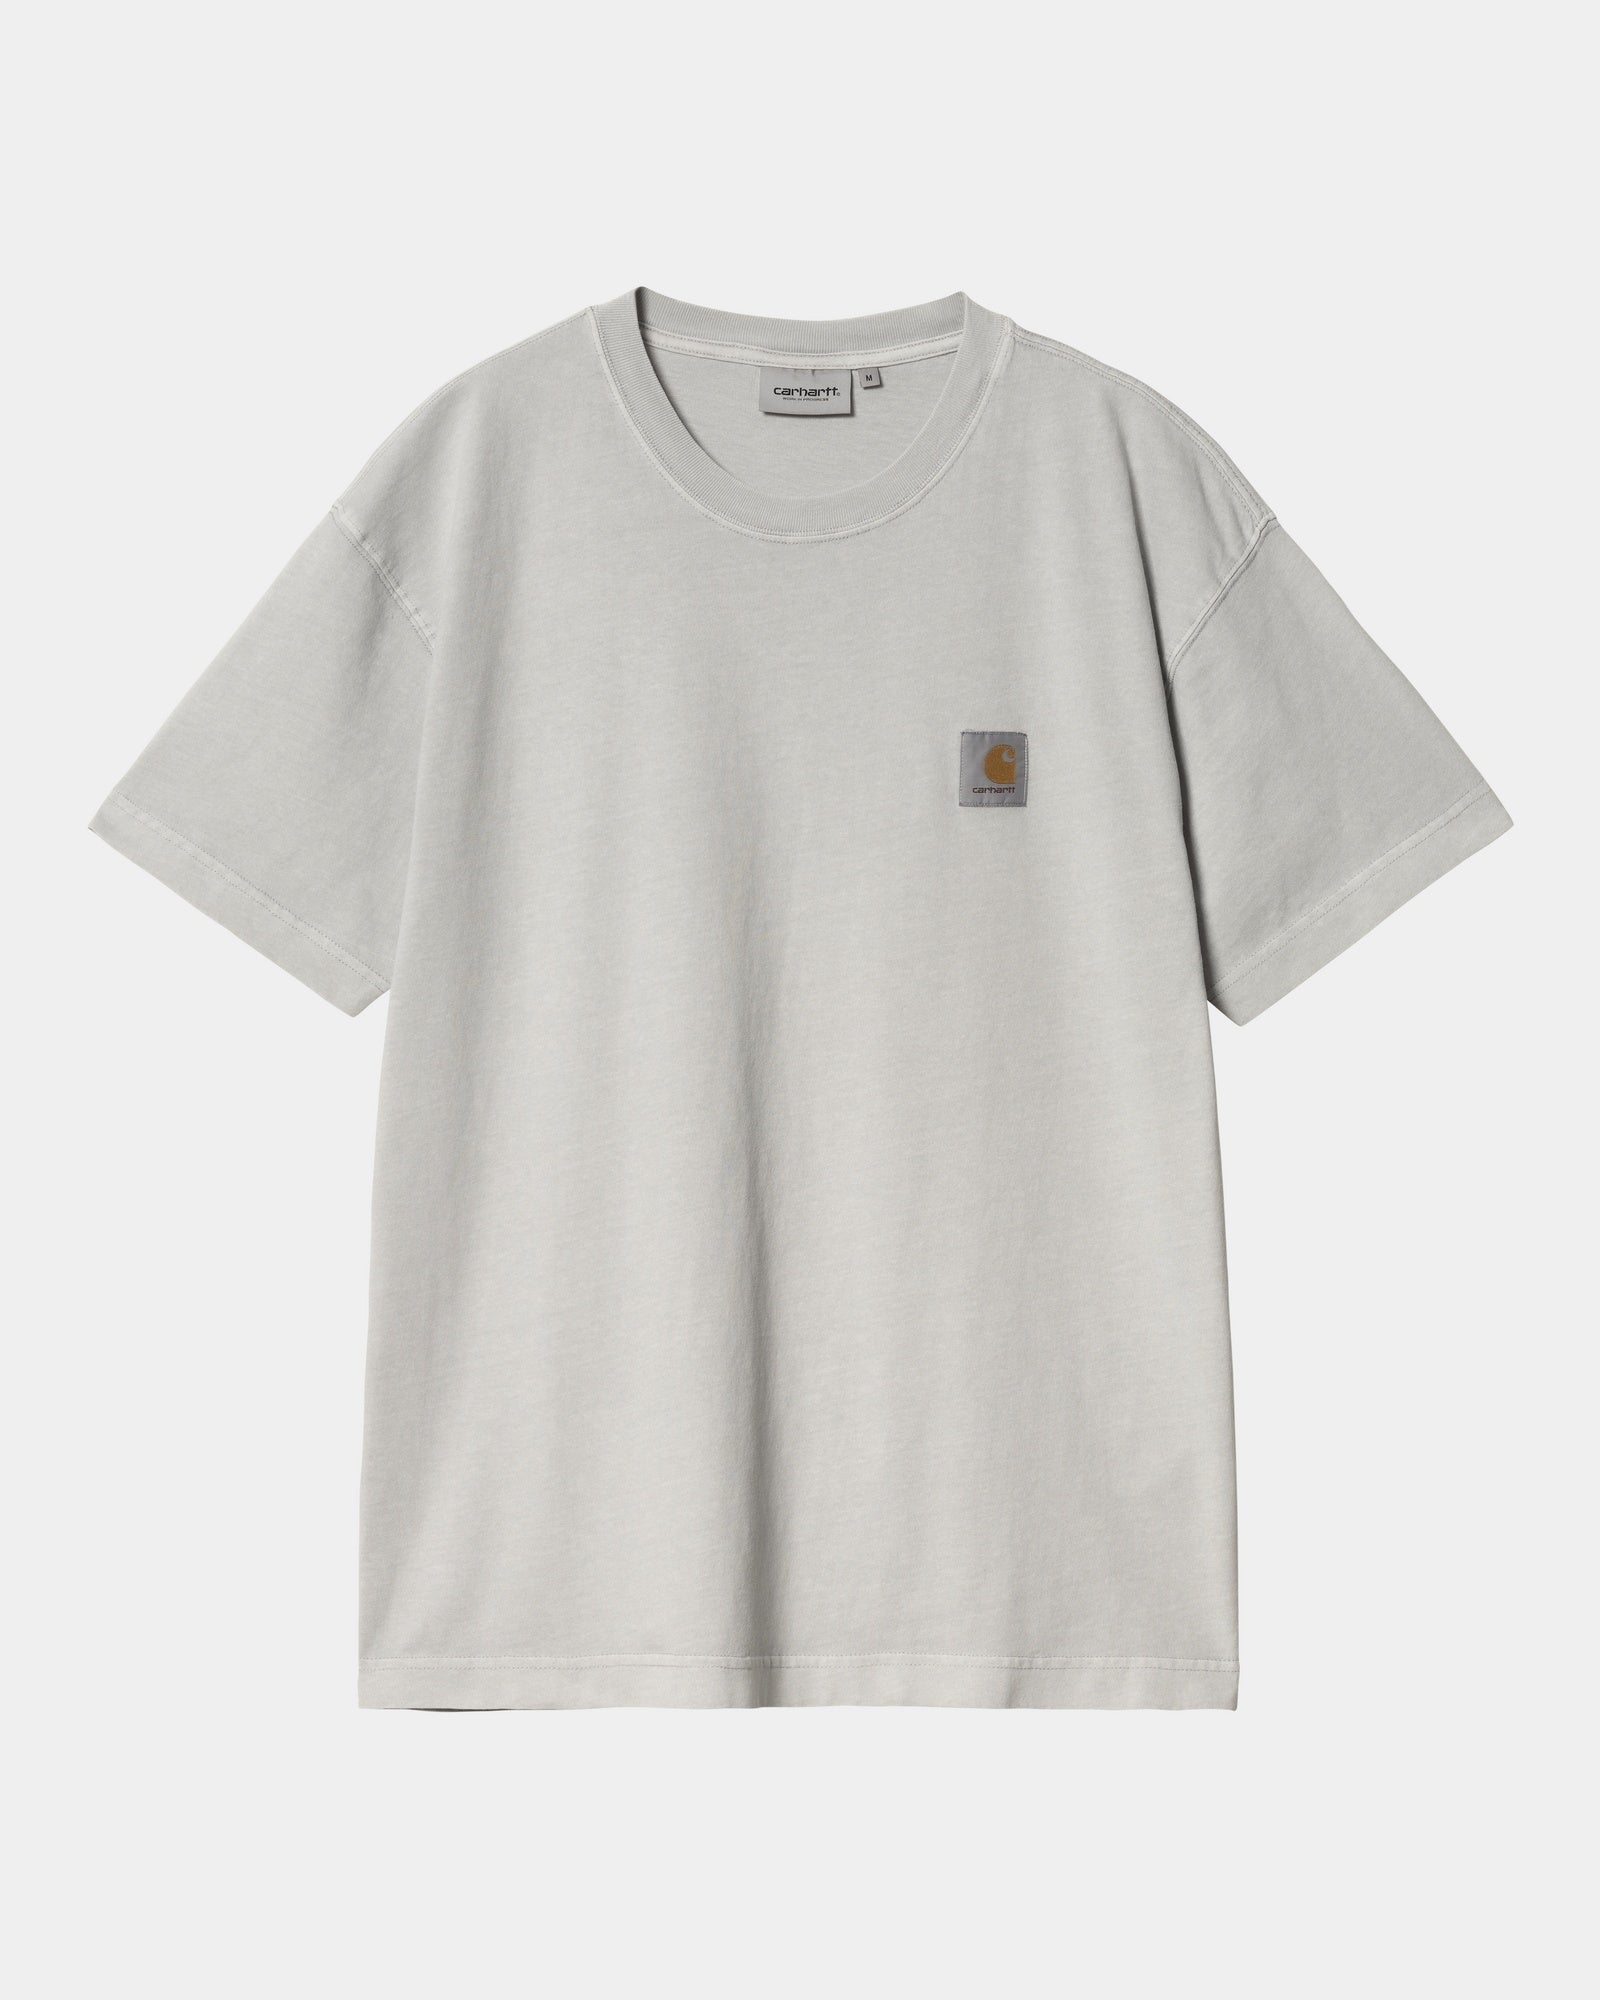 칼하트WIP Carhartt Nelson T-Shirt,Sonic Silver